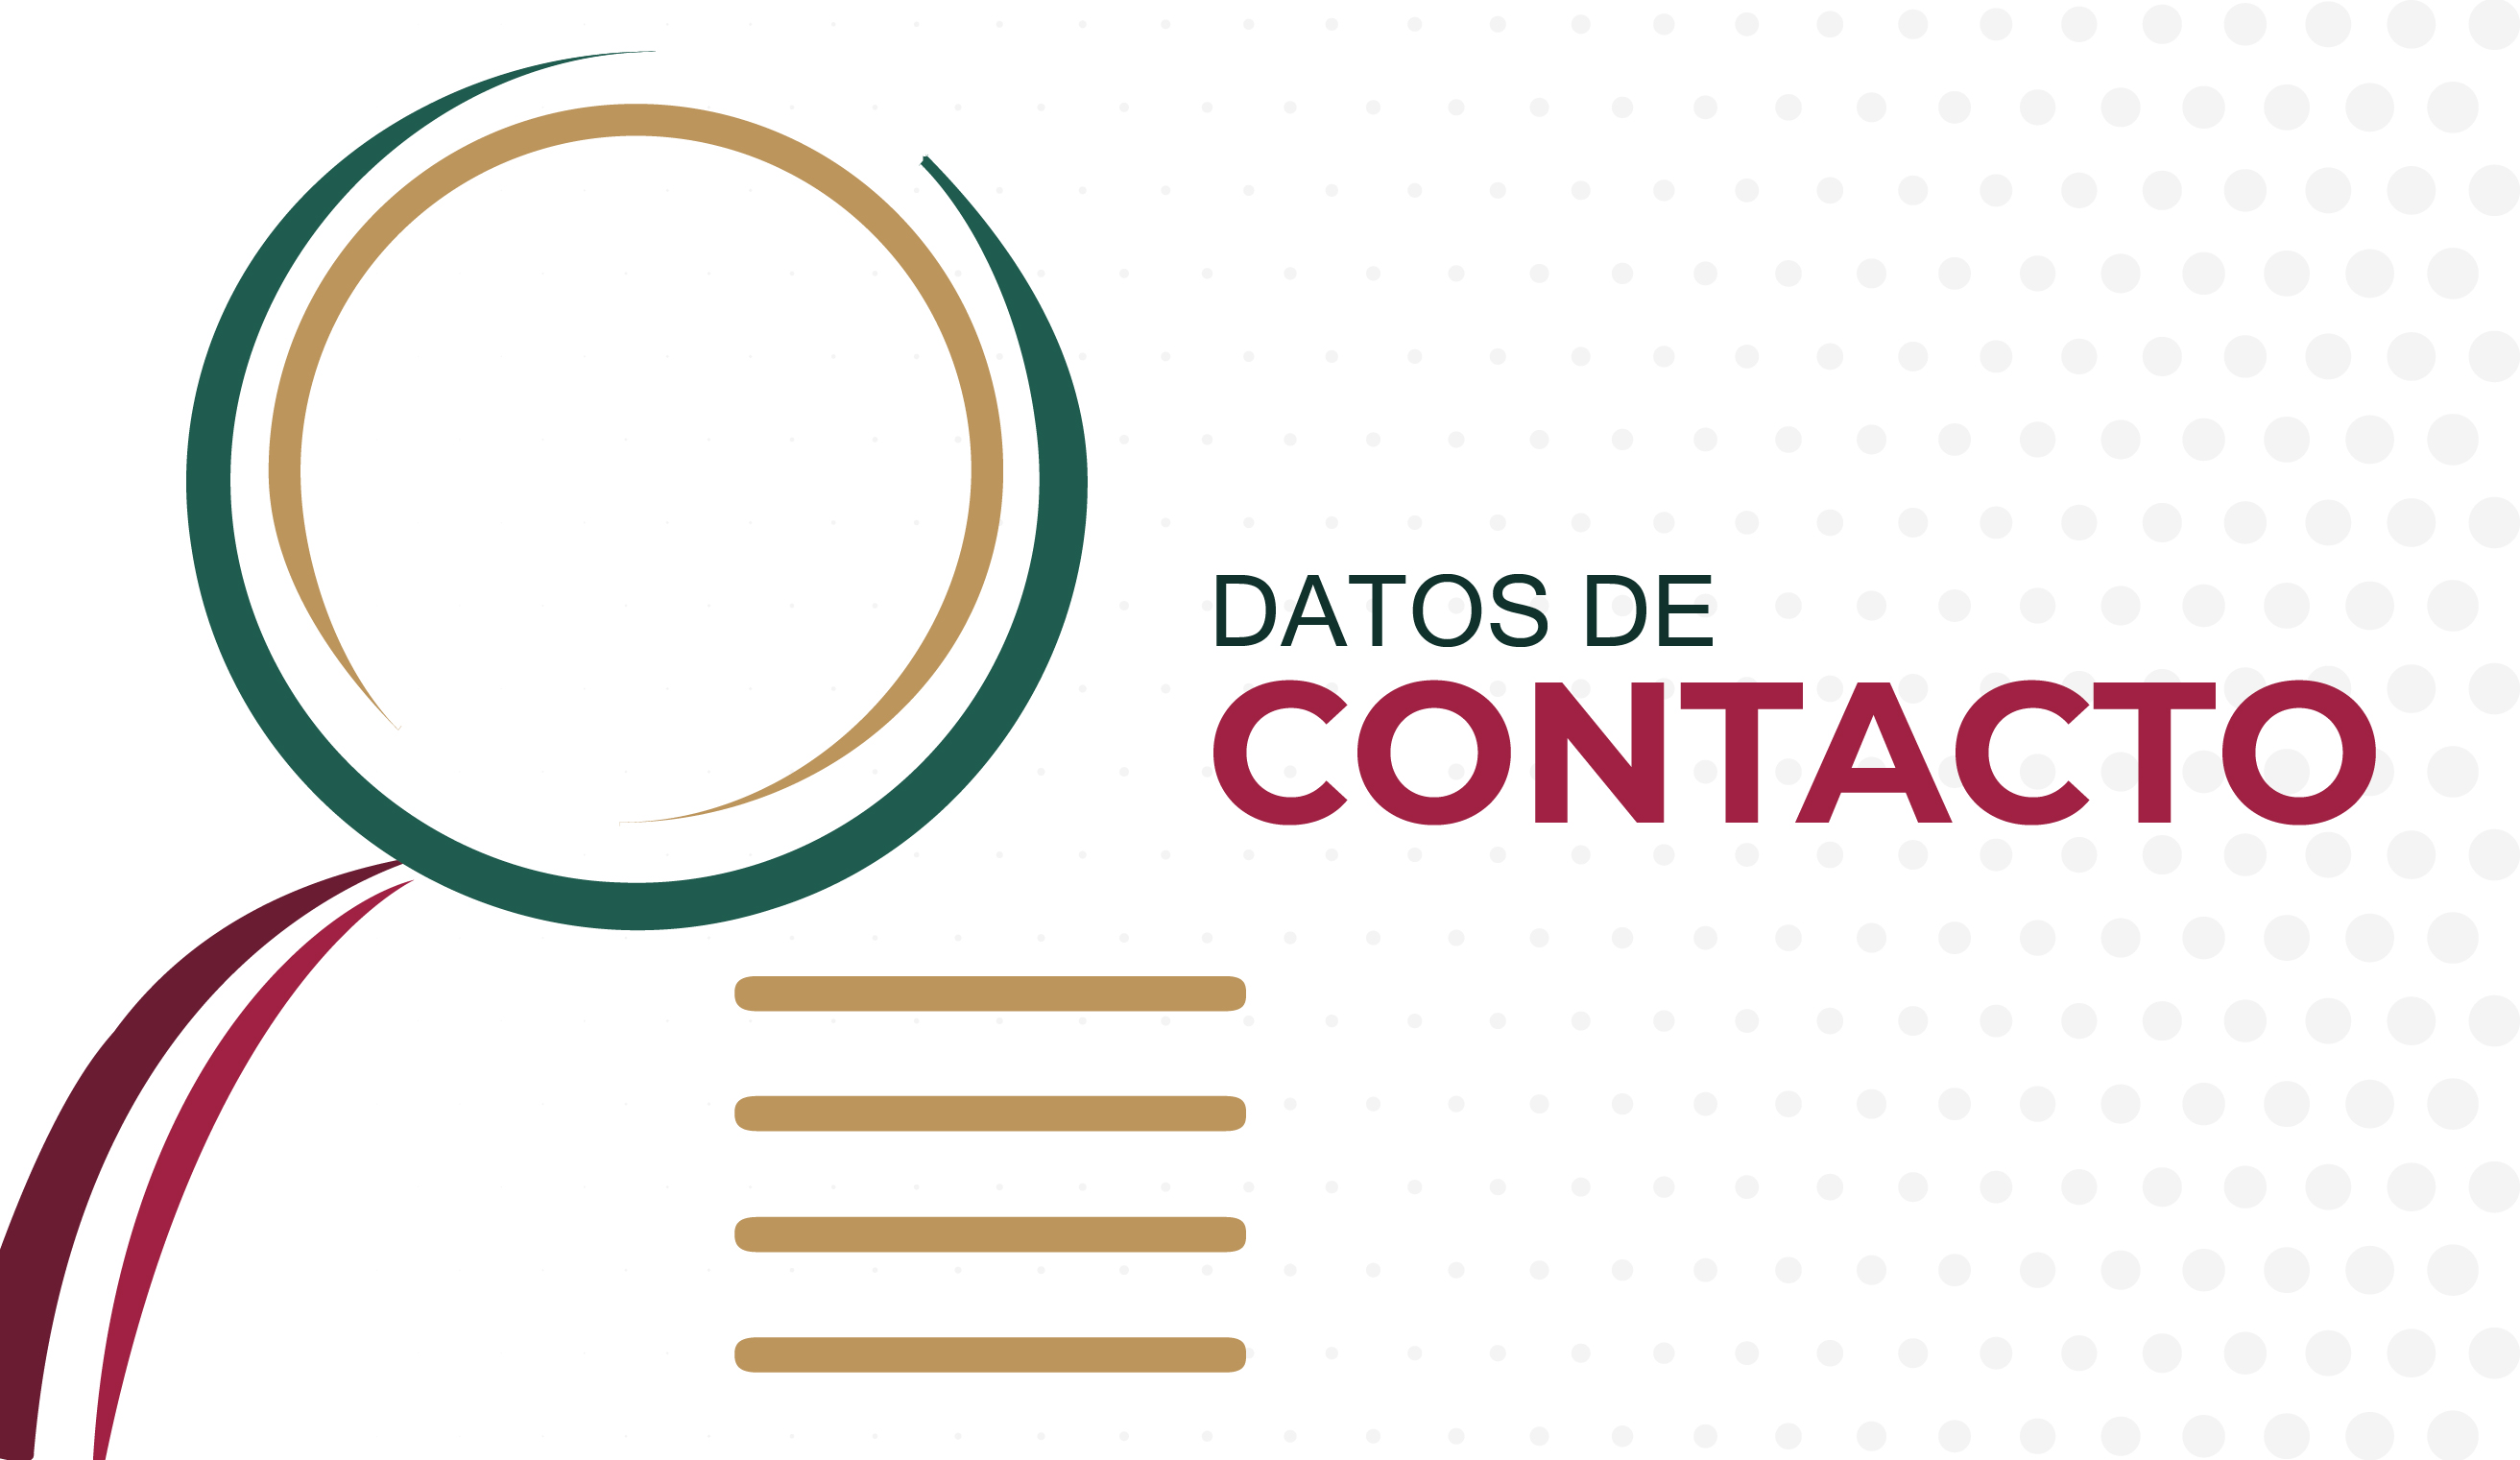 Datos de contacto de la red consular de México en el exterior